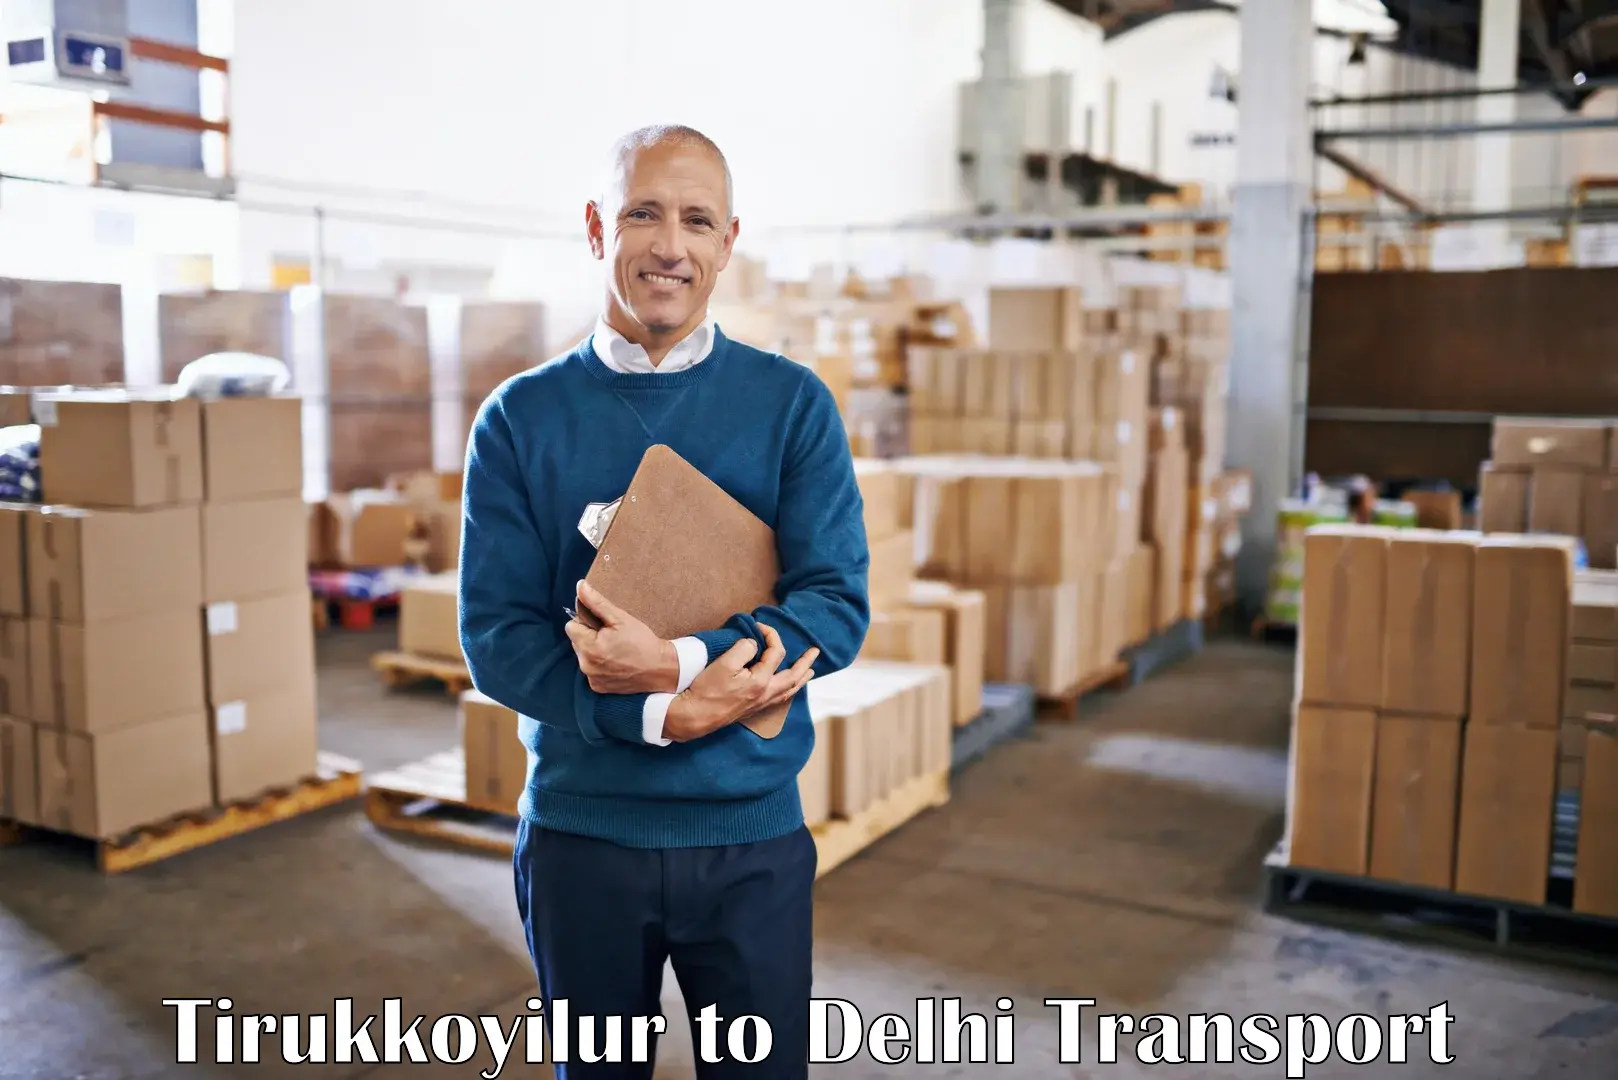 Parcel transport services Tirukkoyilur to Delhi Technological University DTU